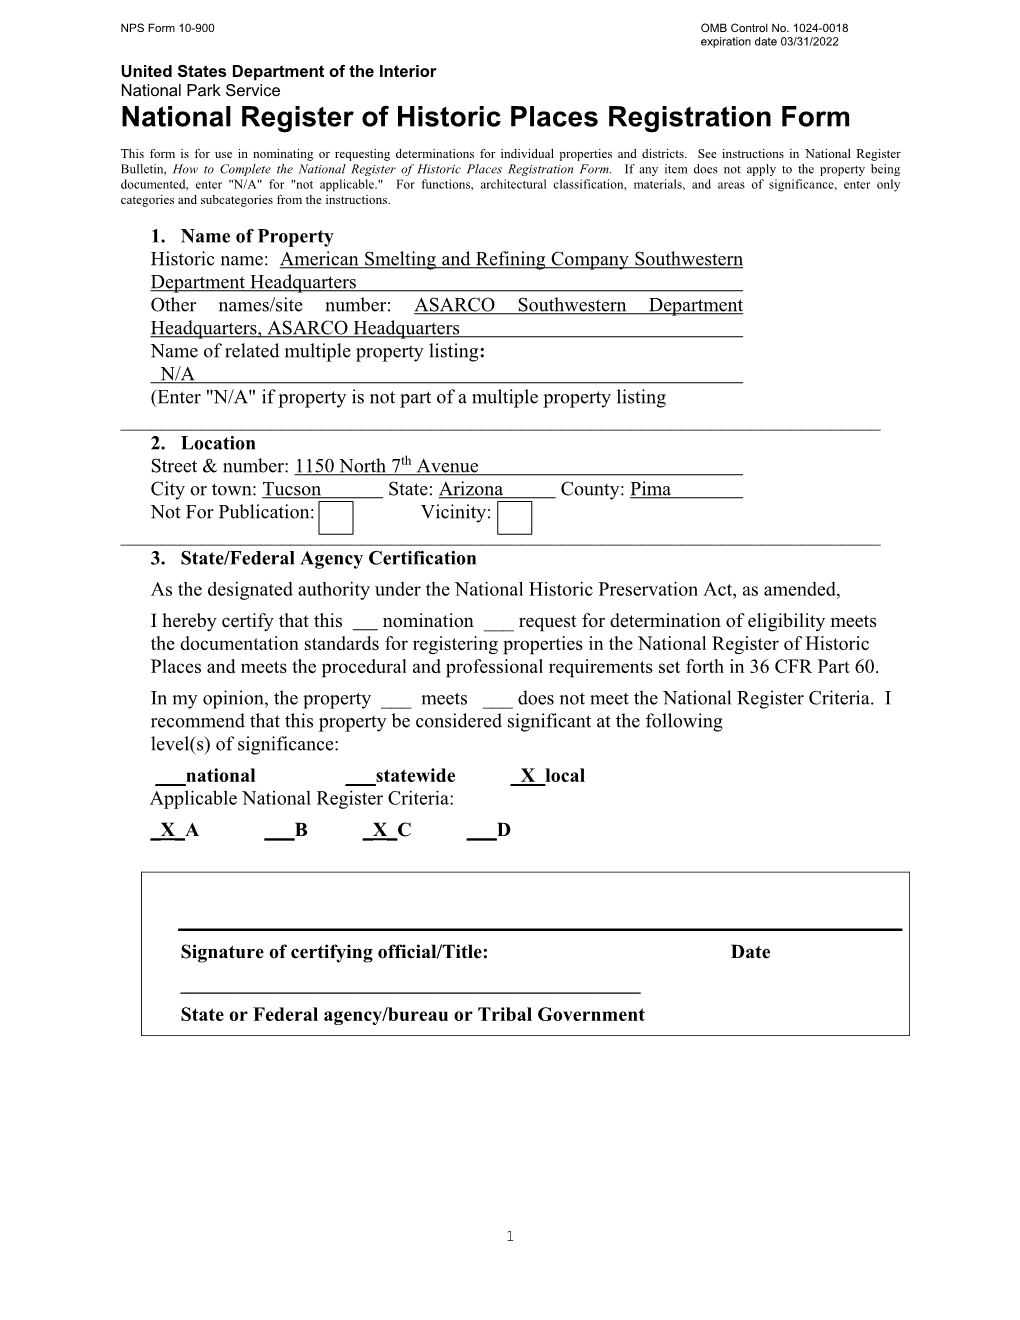 NRHP Registration Form